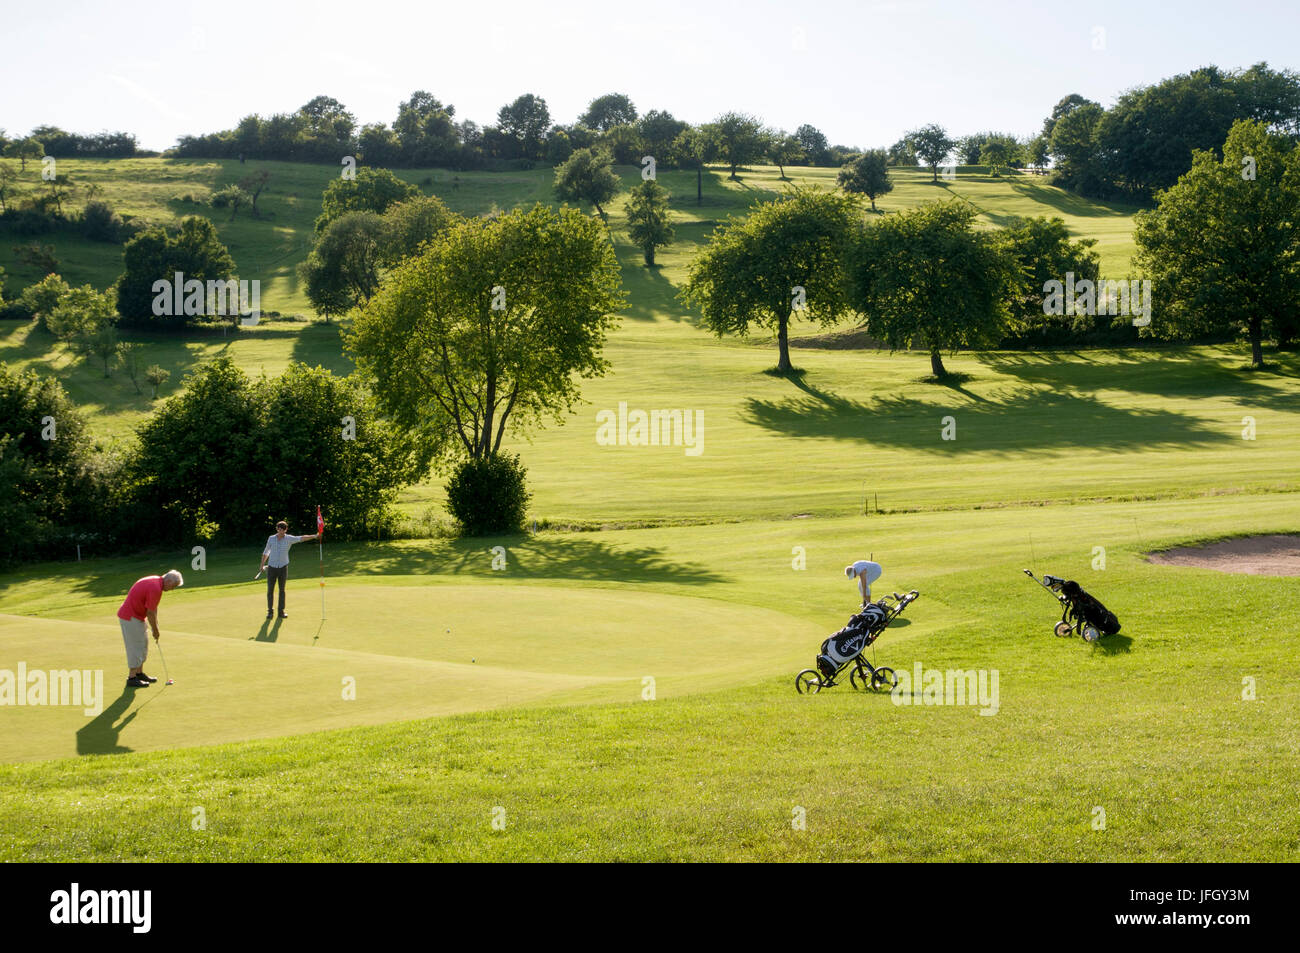 Golfplatz Eschenrod bei Schott, Vogelsberg, Hessen, Deutschland  Stockfotografie - Alamy